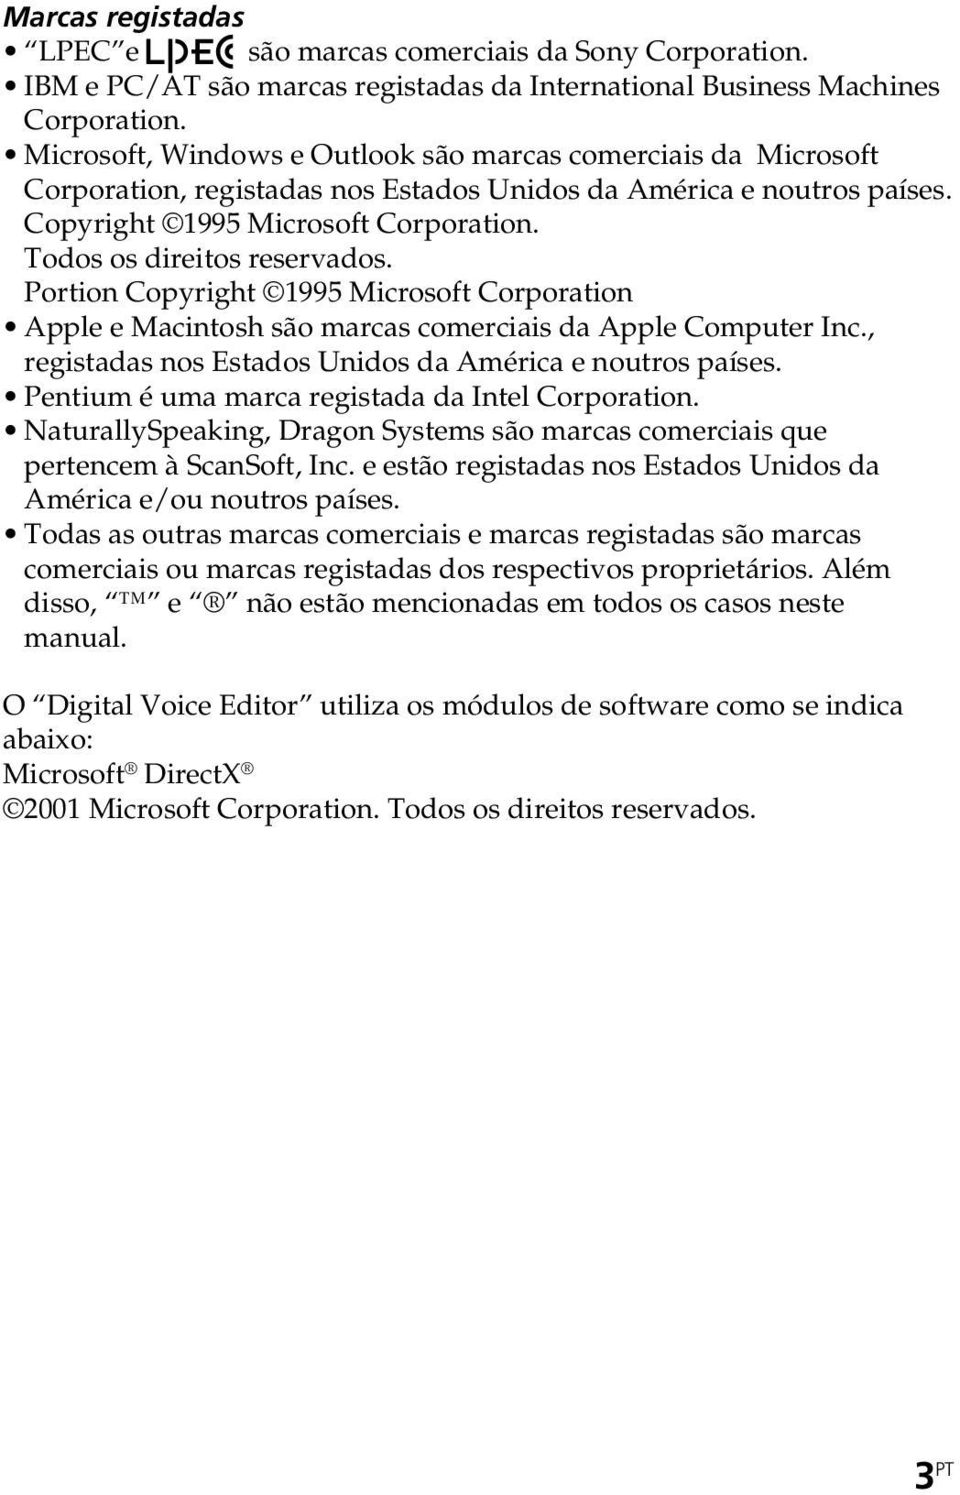 Todos os direitos reservados. Portion Copyright 1995 Microsoft Corporation Apple e Macintosh são marcas comerciais da Apple Computer Inc., registadas nos Estados Unidos da América e noutros países.